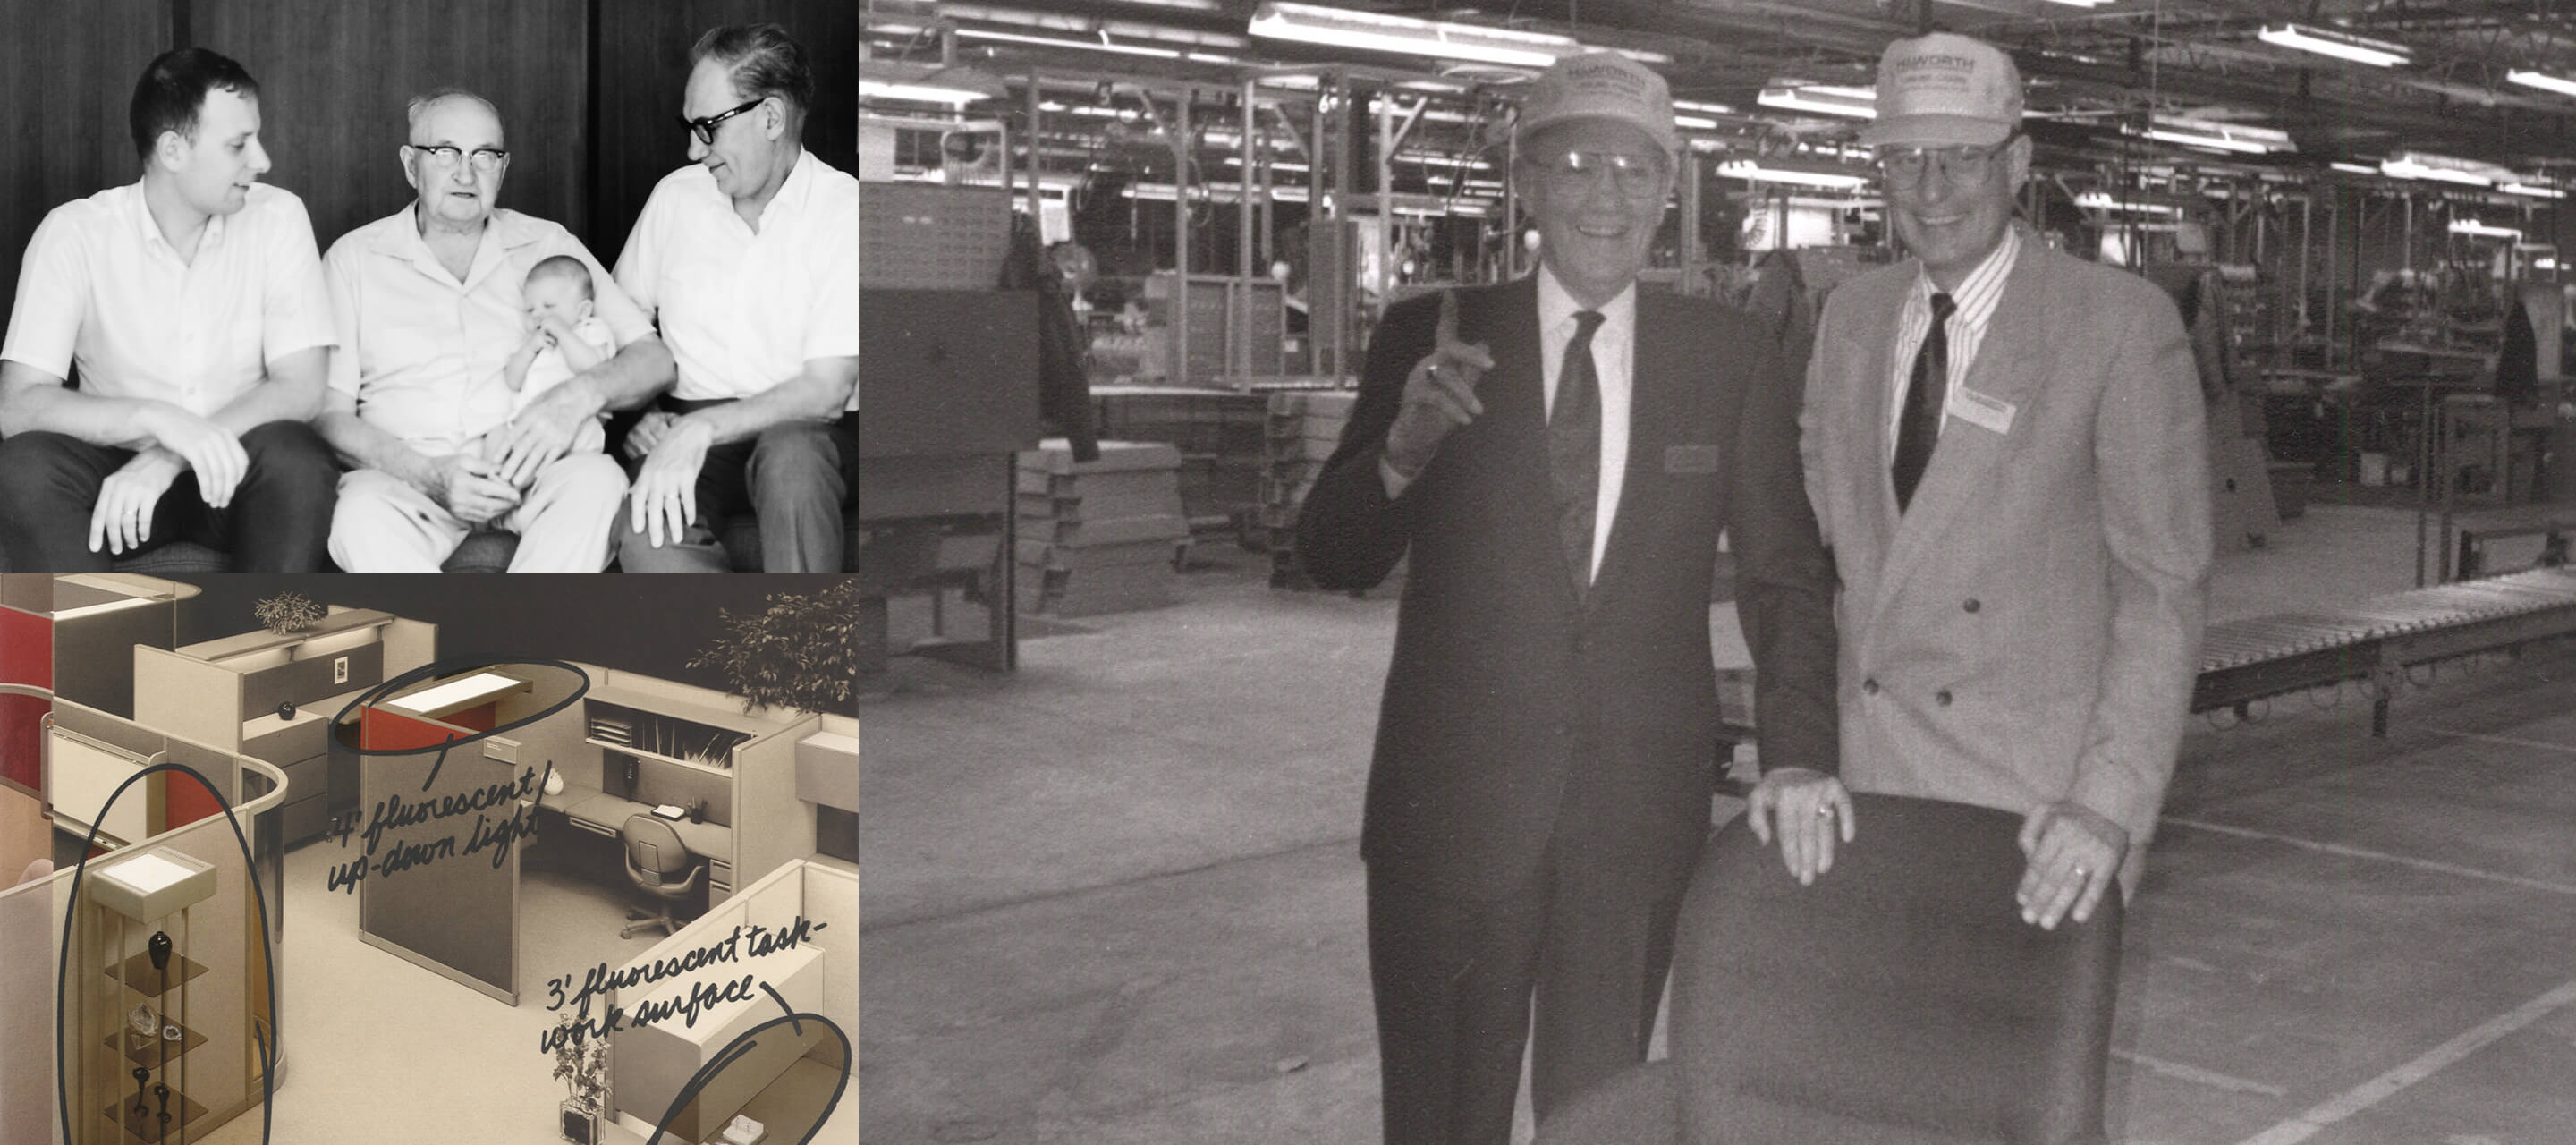 Años 60: Dick, hijo de G. W., vuelve del ejército en 1969 y se pone al cargo de la fabricación, así como del desarrollo de nuevos productos. Su objetivo es producir un sistema modular para la oficina. Dick pasó a tomar el control de la empresa como Chairman de 1994 a 2009, hasta que su hijo Matthew asume el cargo.